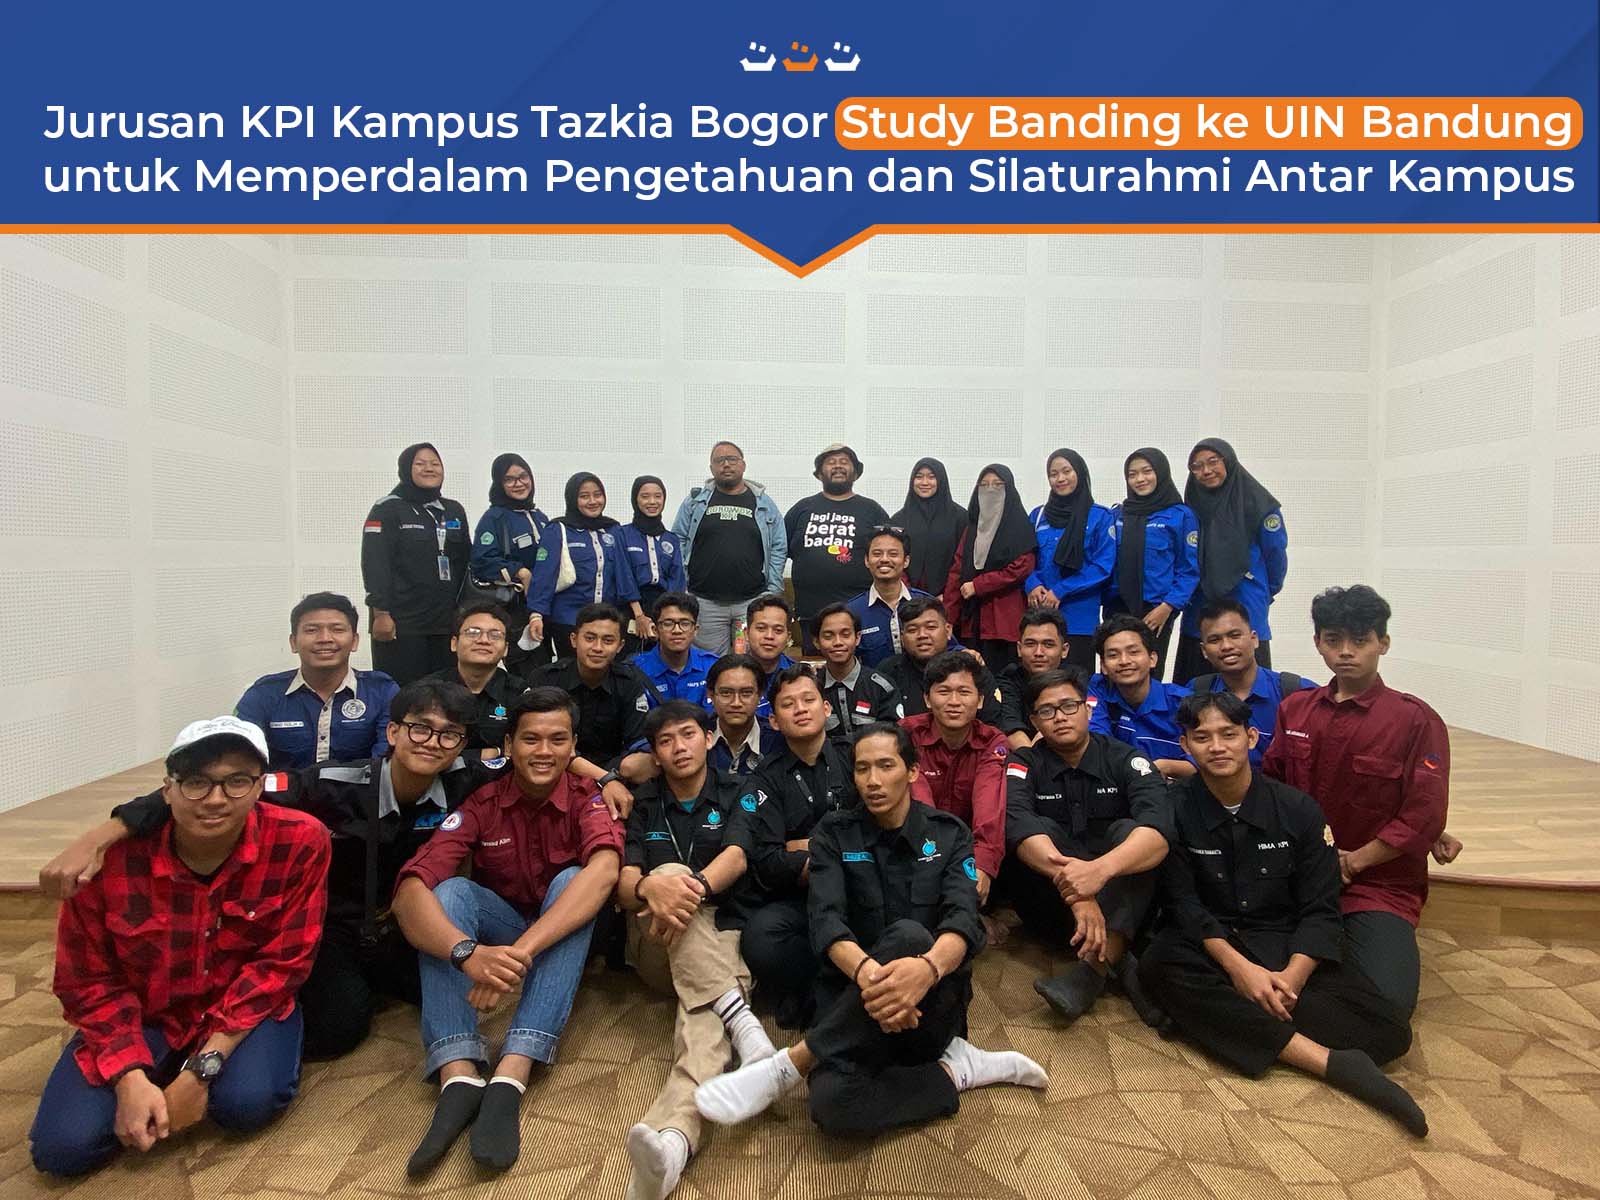 Jurusan KPI Kampus Tazkia Bogor Study Banding ke UIN Bandung untuk Memperdalam Pengetahuan dan Silaturahmi Antar Kampus